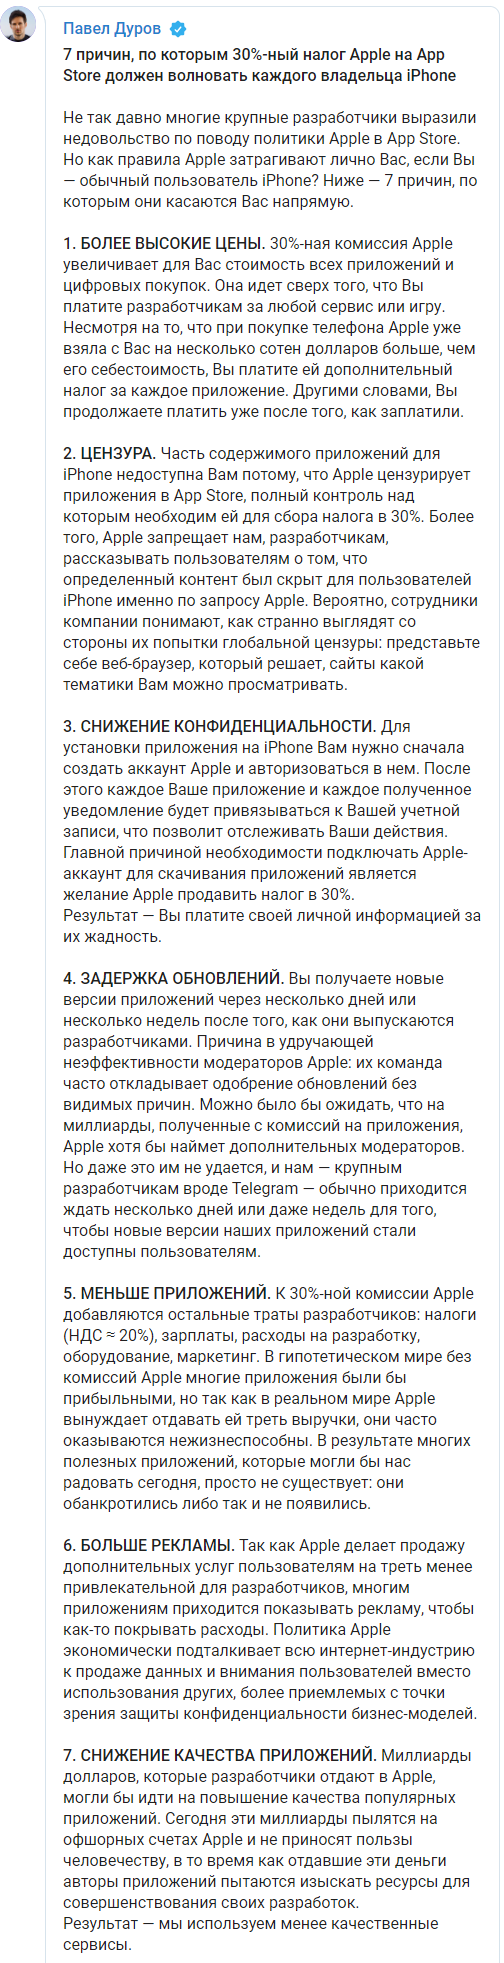 Дуров рассказал, как политика компании Apple бьет по каждому владельцу iPhone. Скриншот: Телеграм